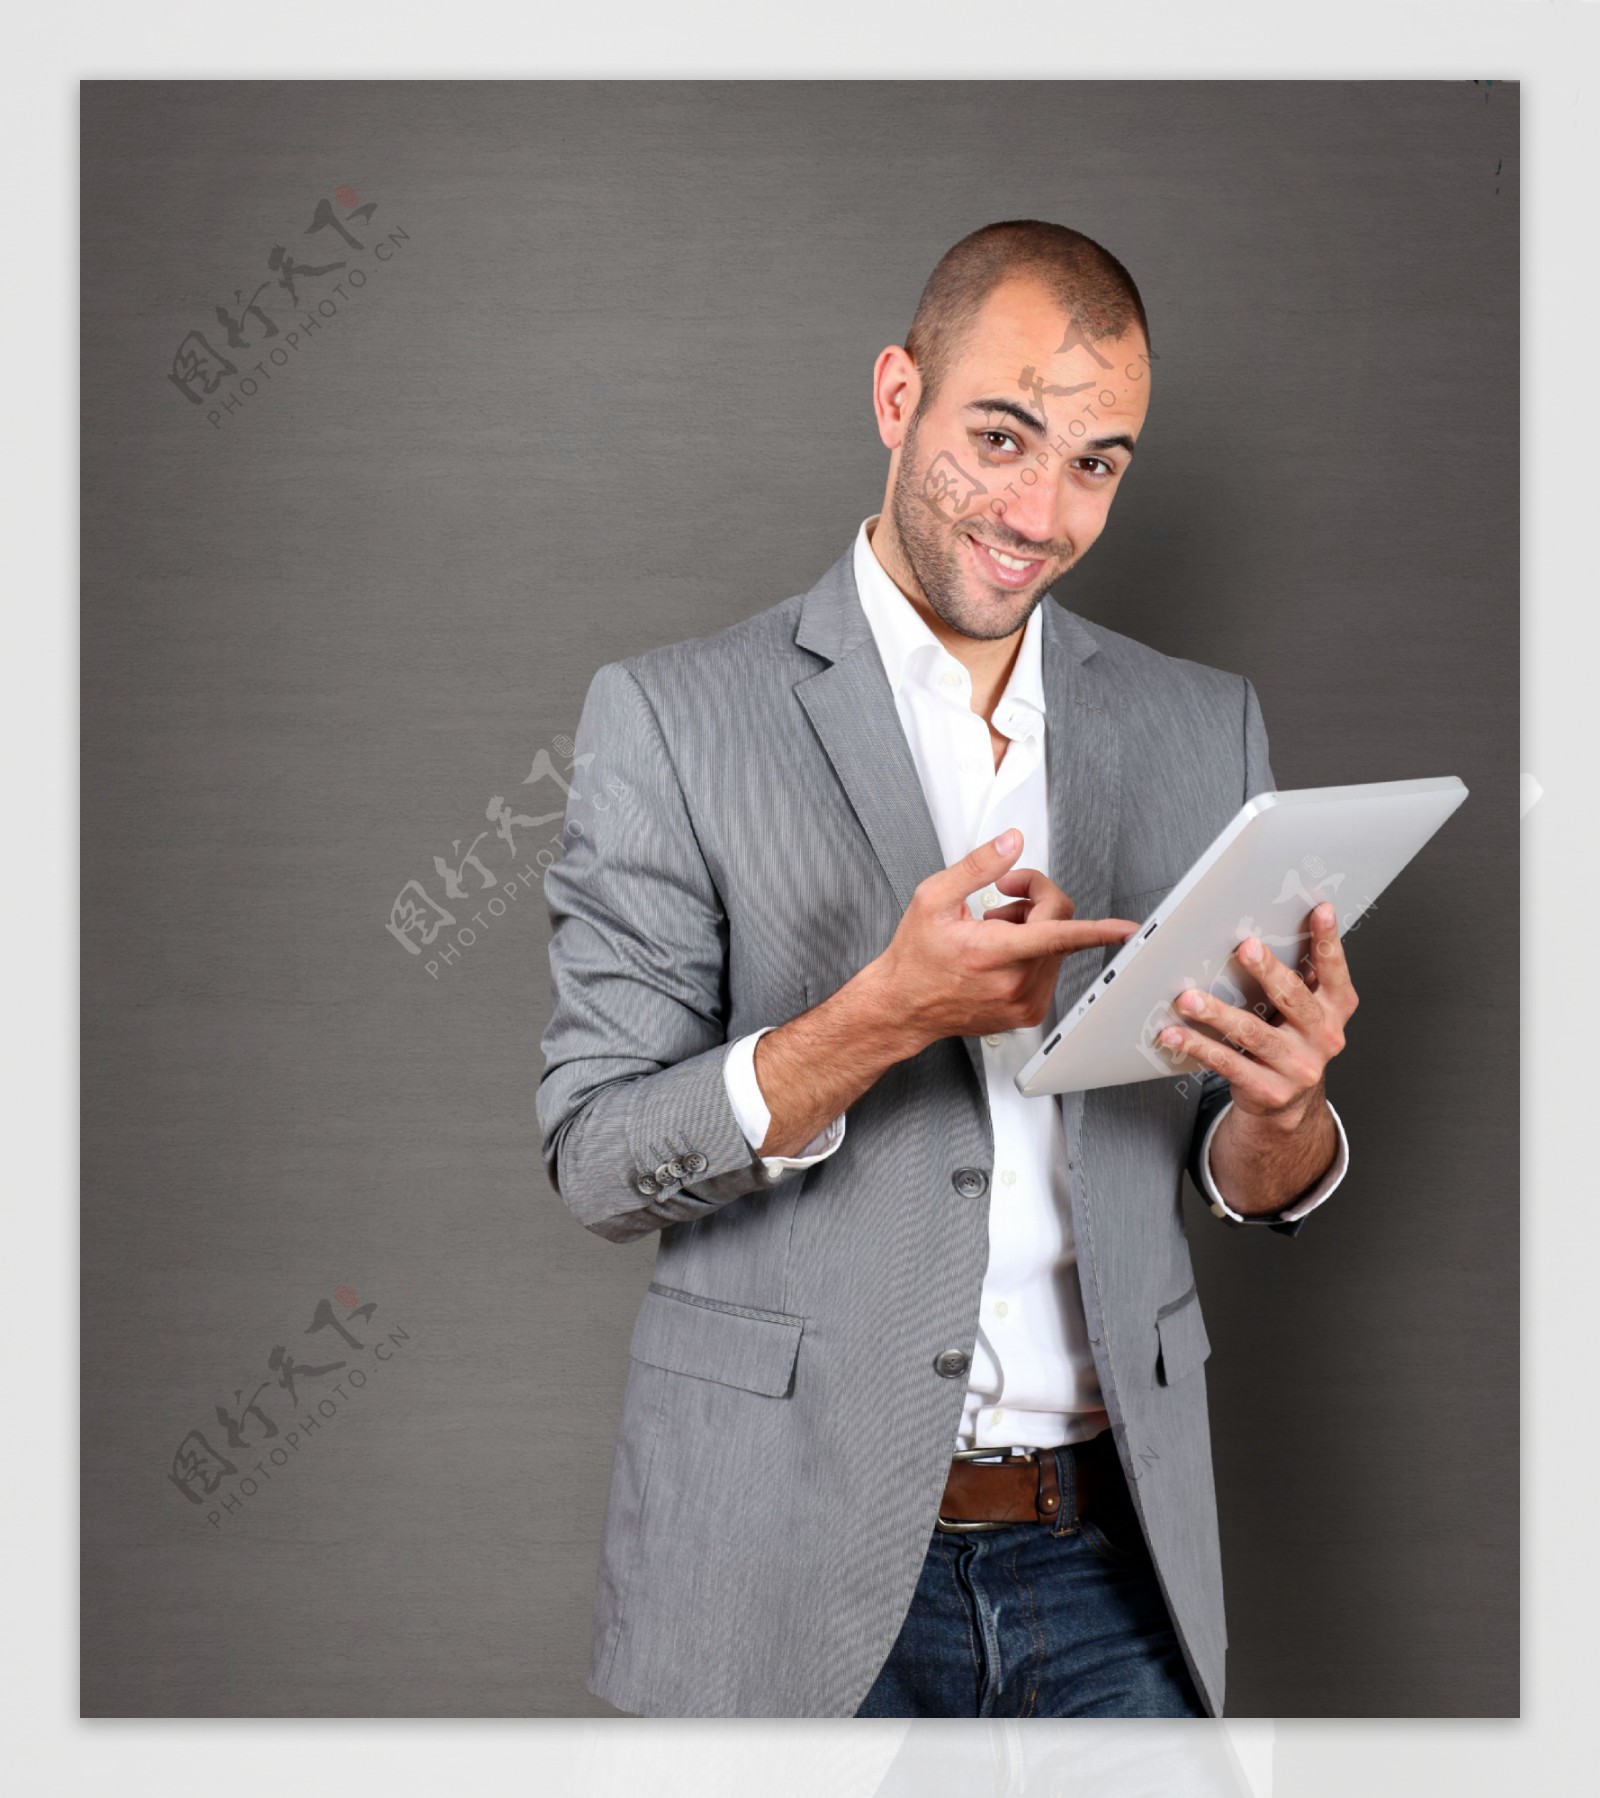 拿着笔记本电脑的商务男人图片